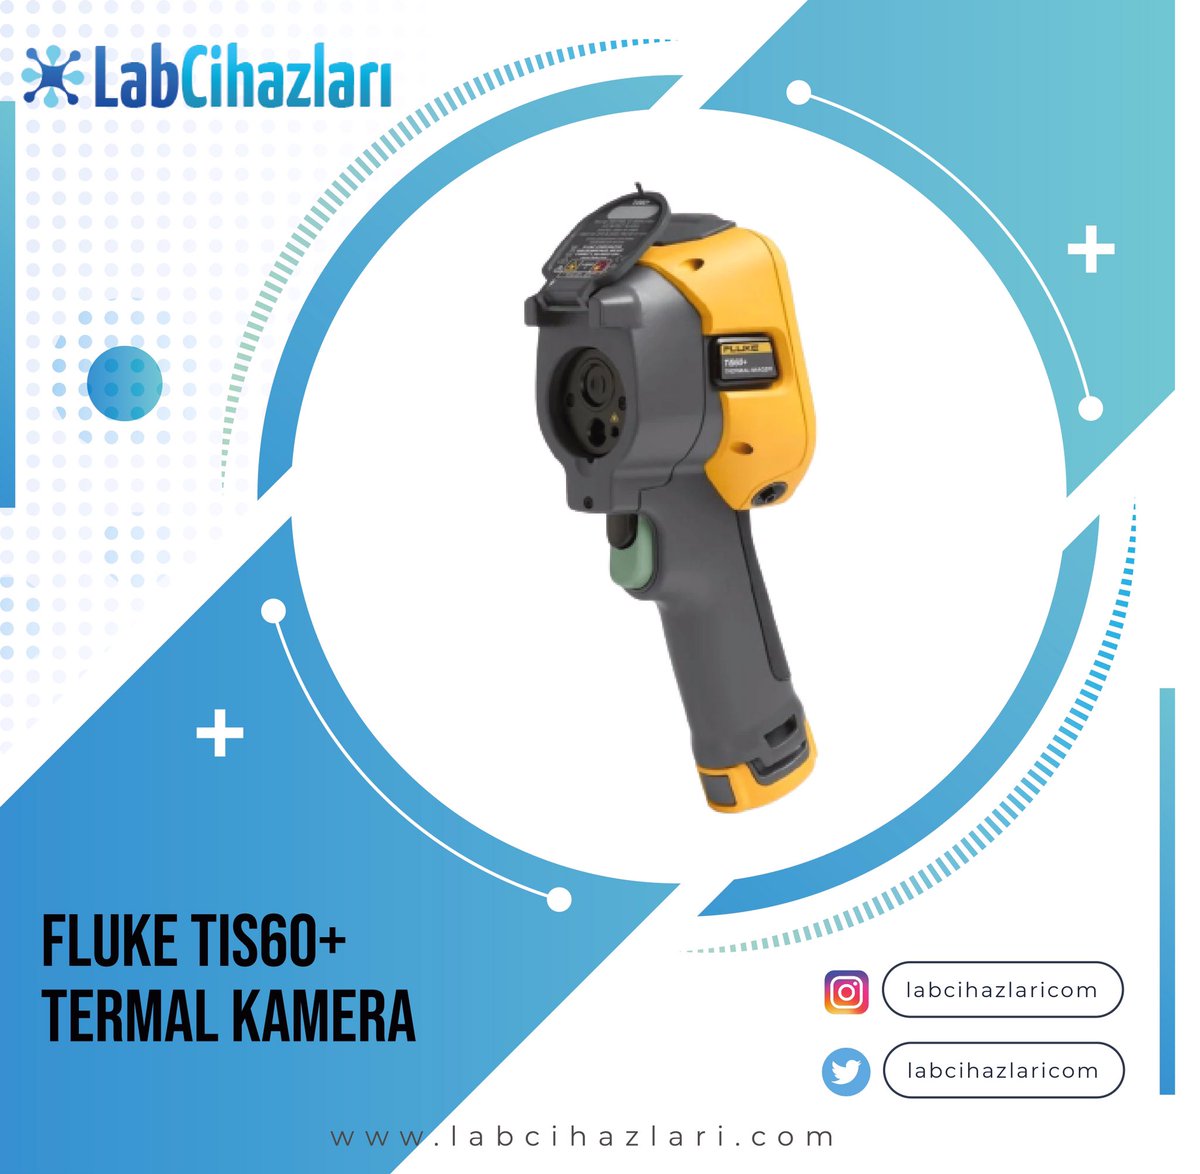 Fluke TIS 60+ Termal Kamera

Detaylı bilgi için iletişime geçebilirsiniz. 

#fluke #tis60 #thermal #thermalcam #thermalcamera #thermalcameras #fluketis #flukethermalcamera